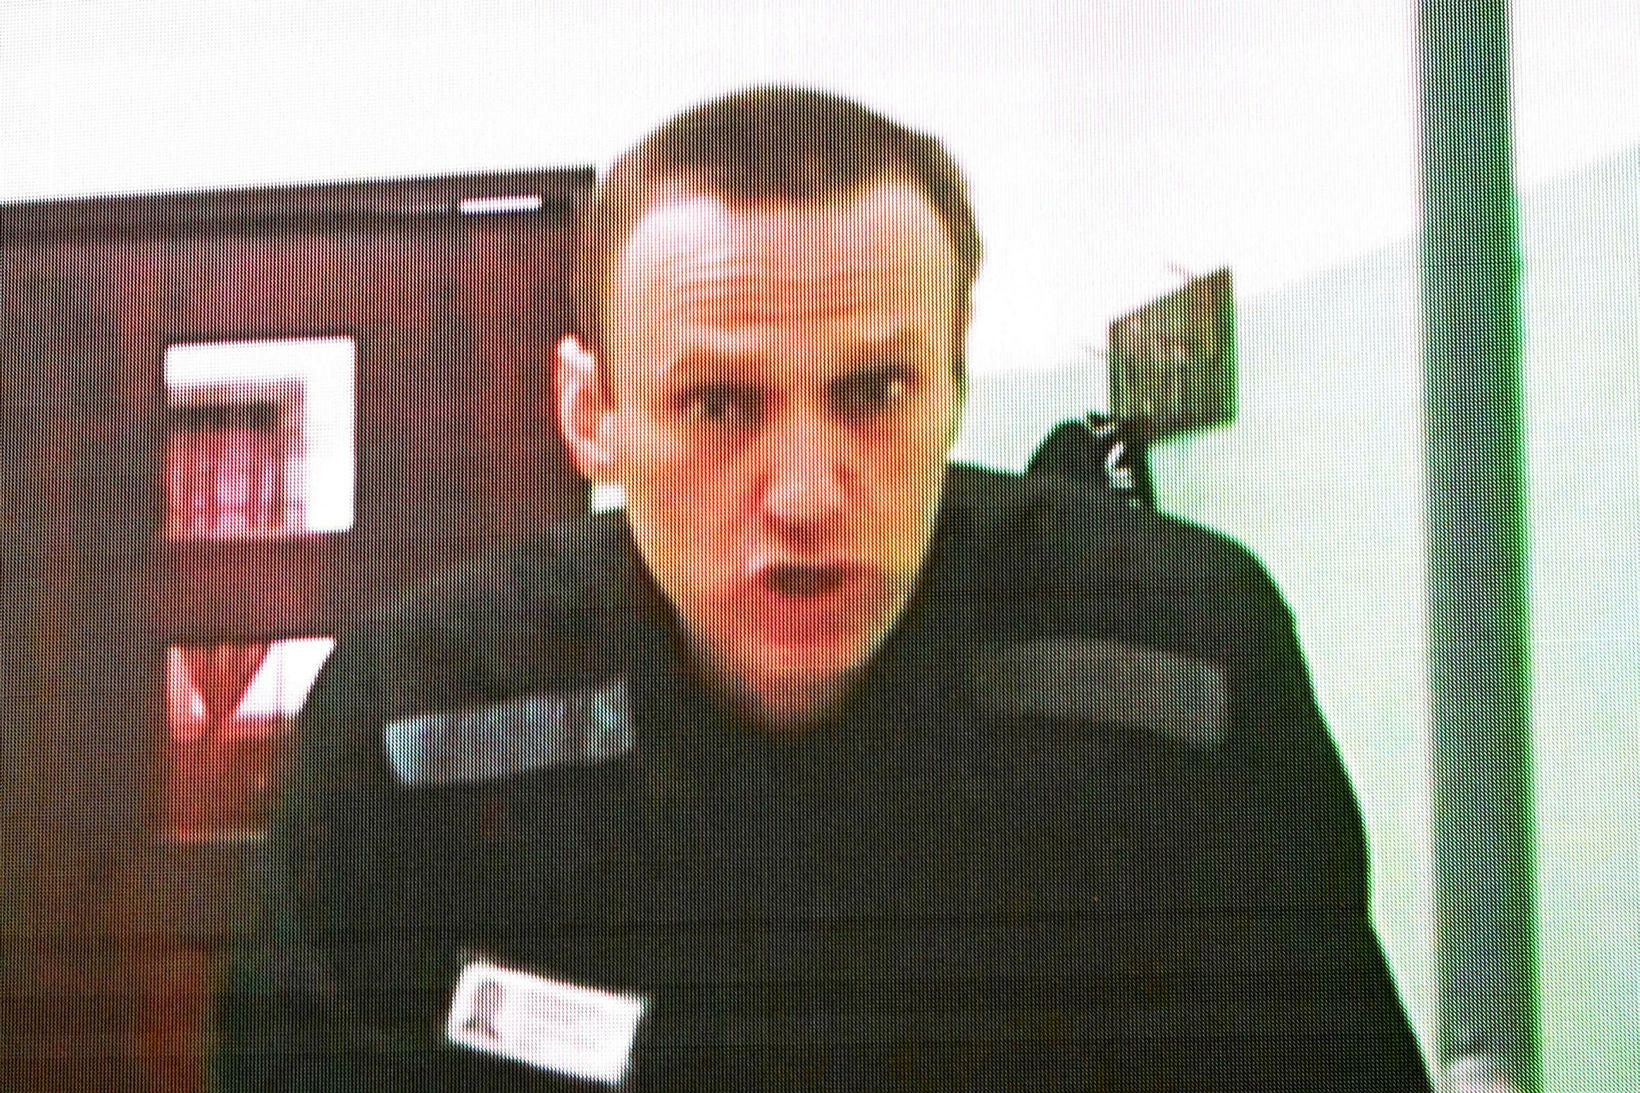 Alexei Navalní var óhræddur við að gagnrýna rússnesk stjórnvöld.